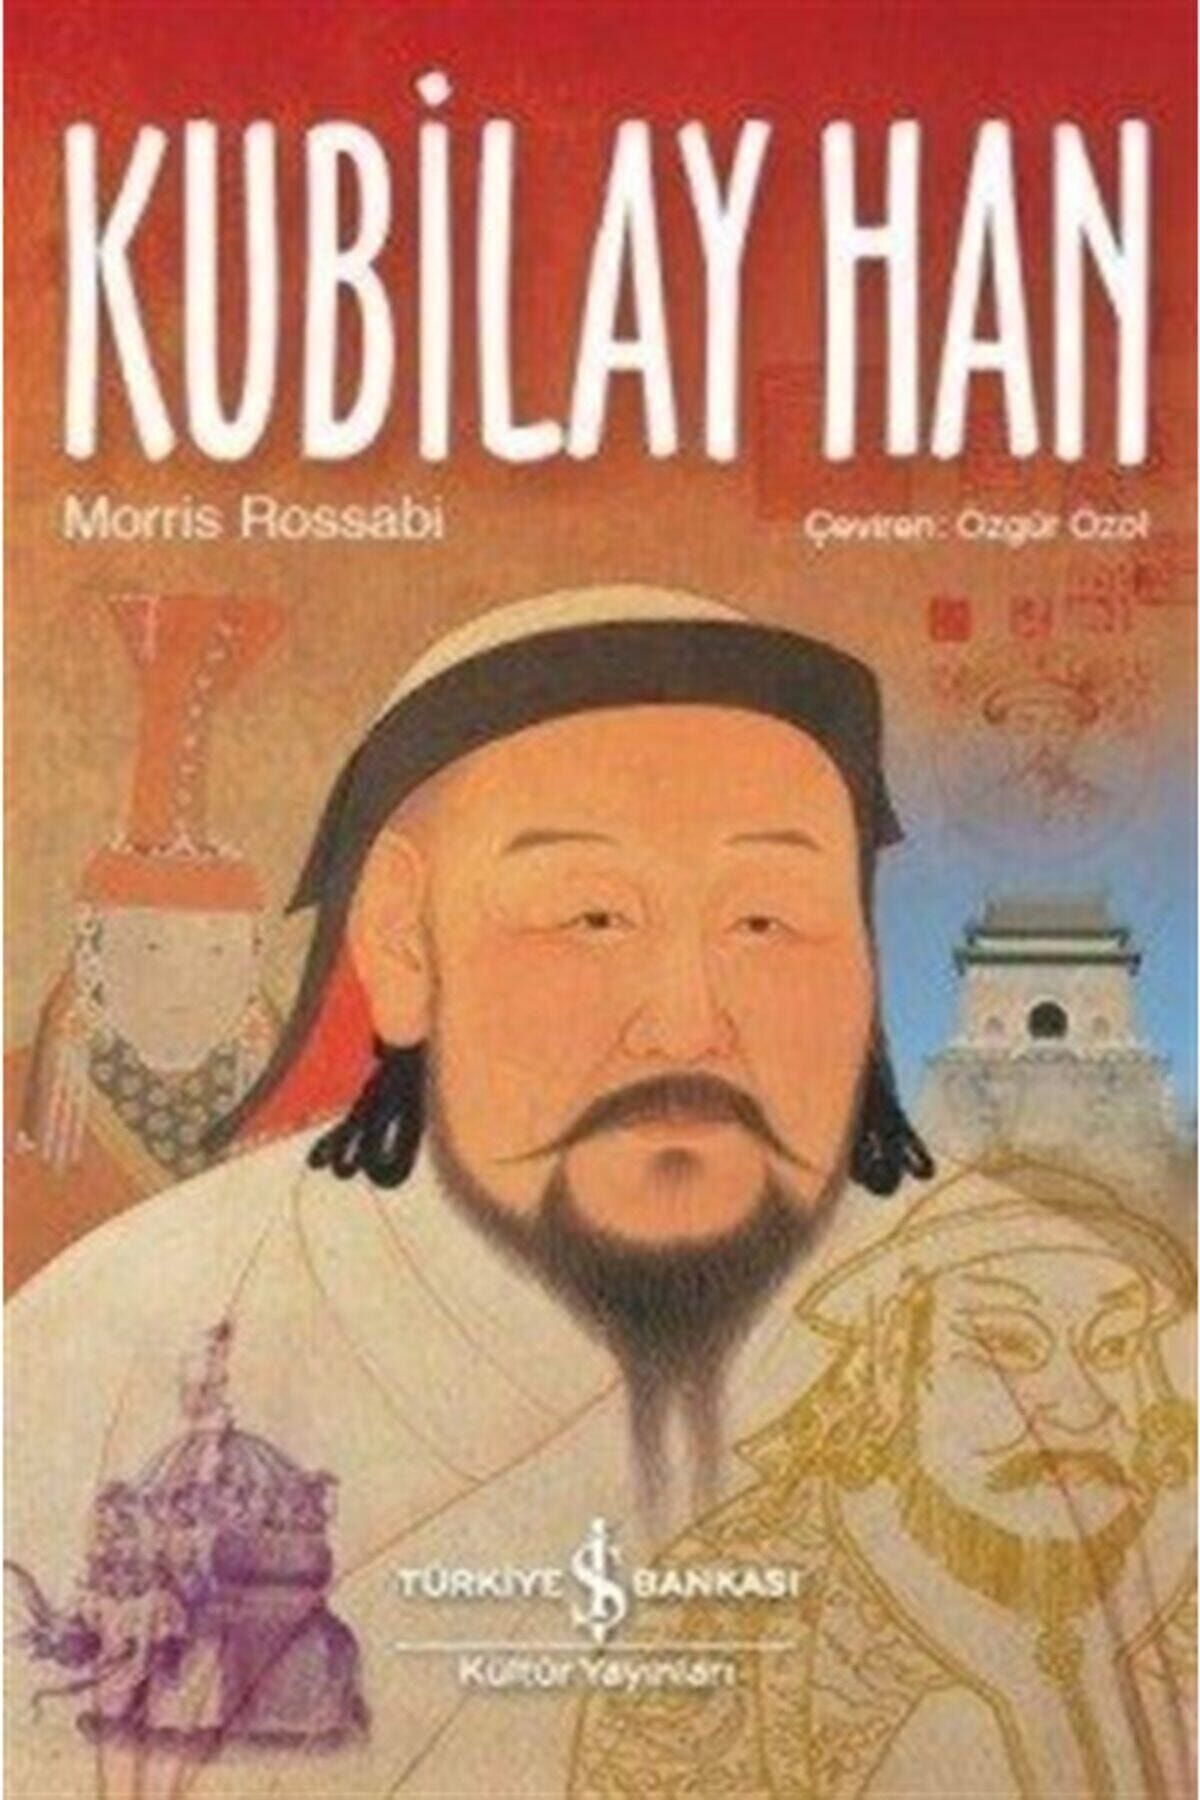 Türkiye İş Bankası Kültür Yayınları Kubilay Han Morris Rossabi - Morris Rossabi